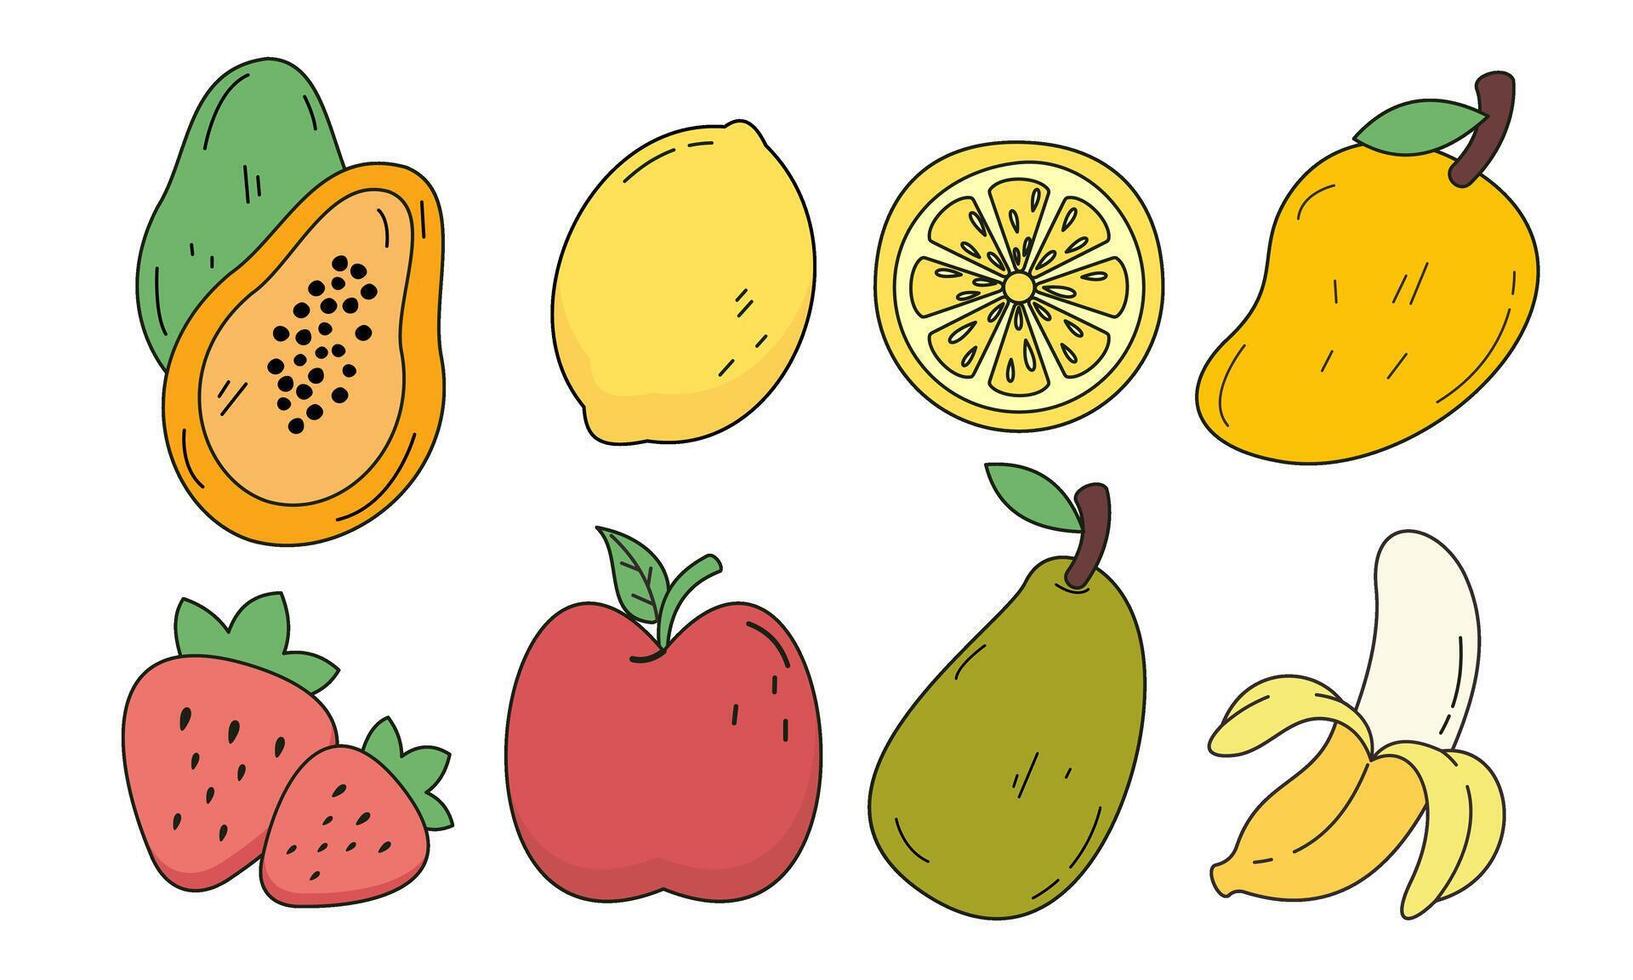 Fruta dibujos animados grande conjunto colección vector